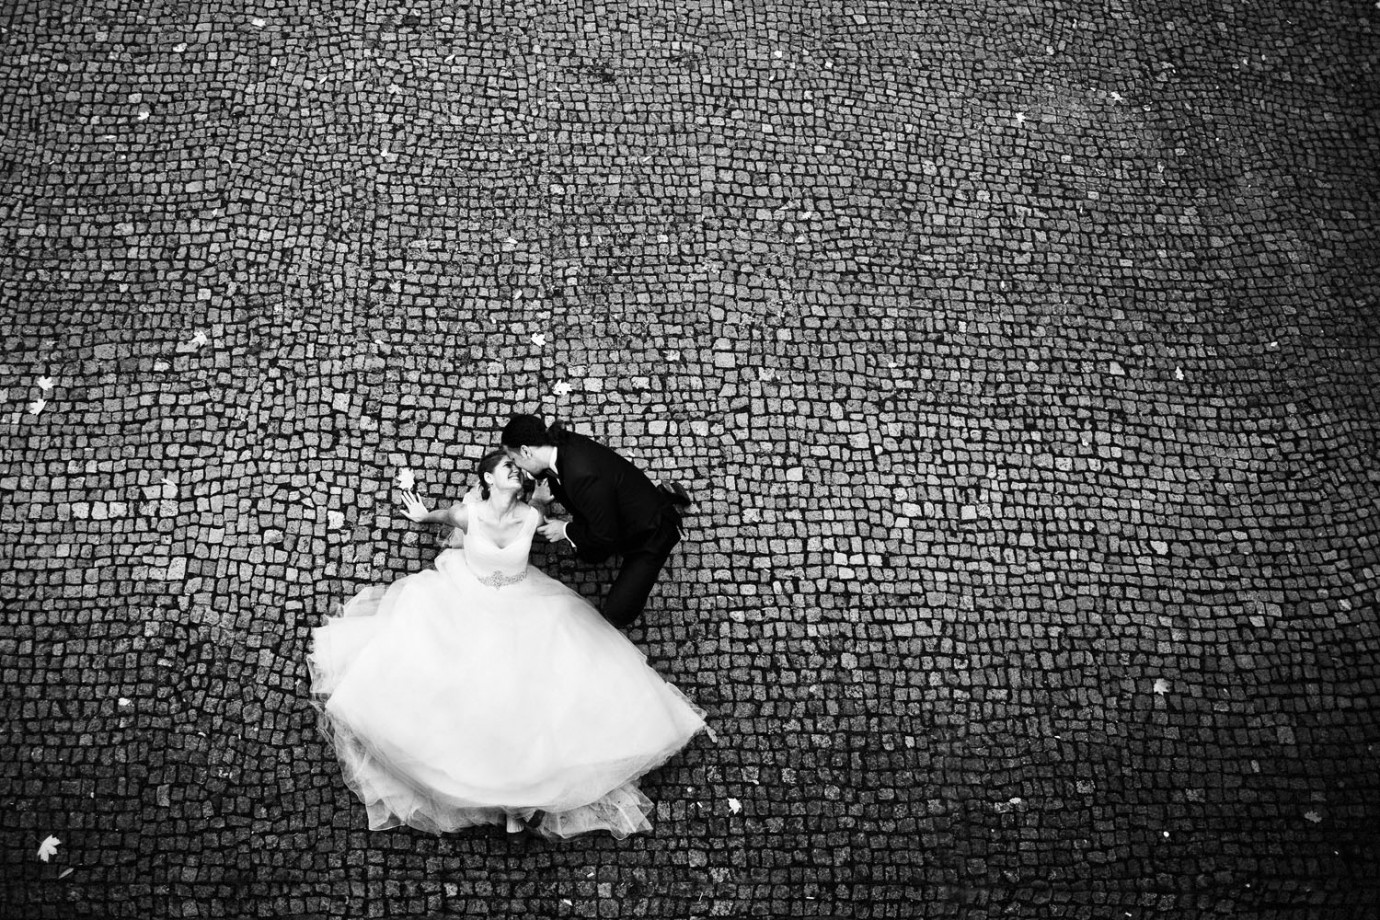 zdjęcia warszawa fotograf piotr-stach portfolio zdjecia slubne inspiracje wesele plener slubny sesja slubna